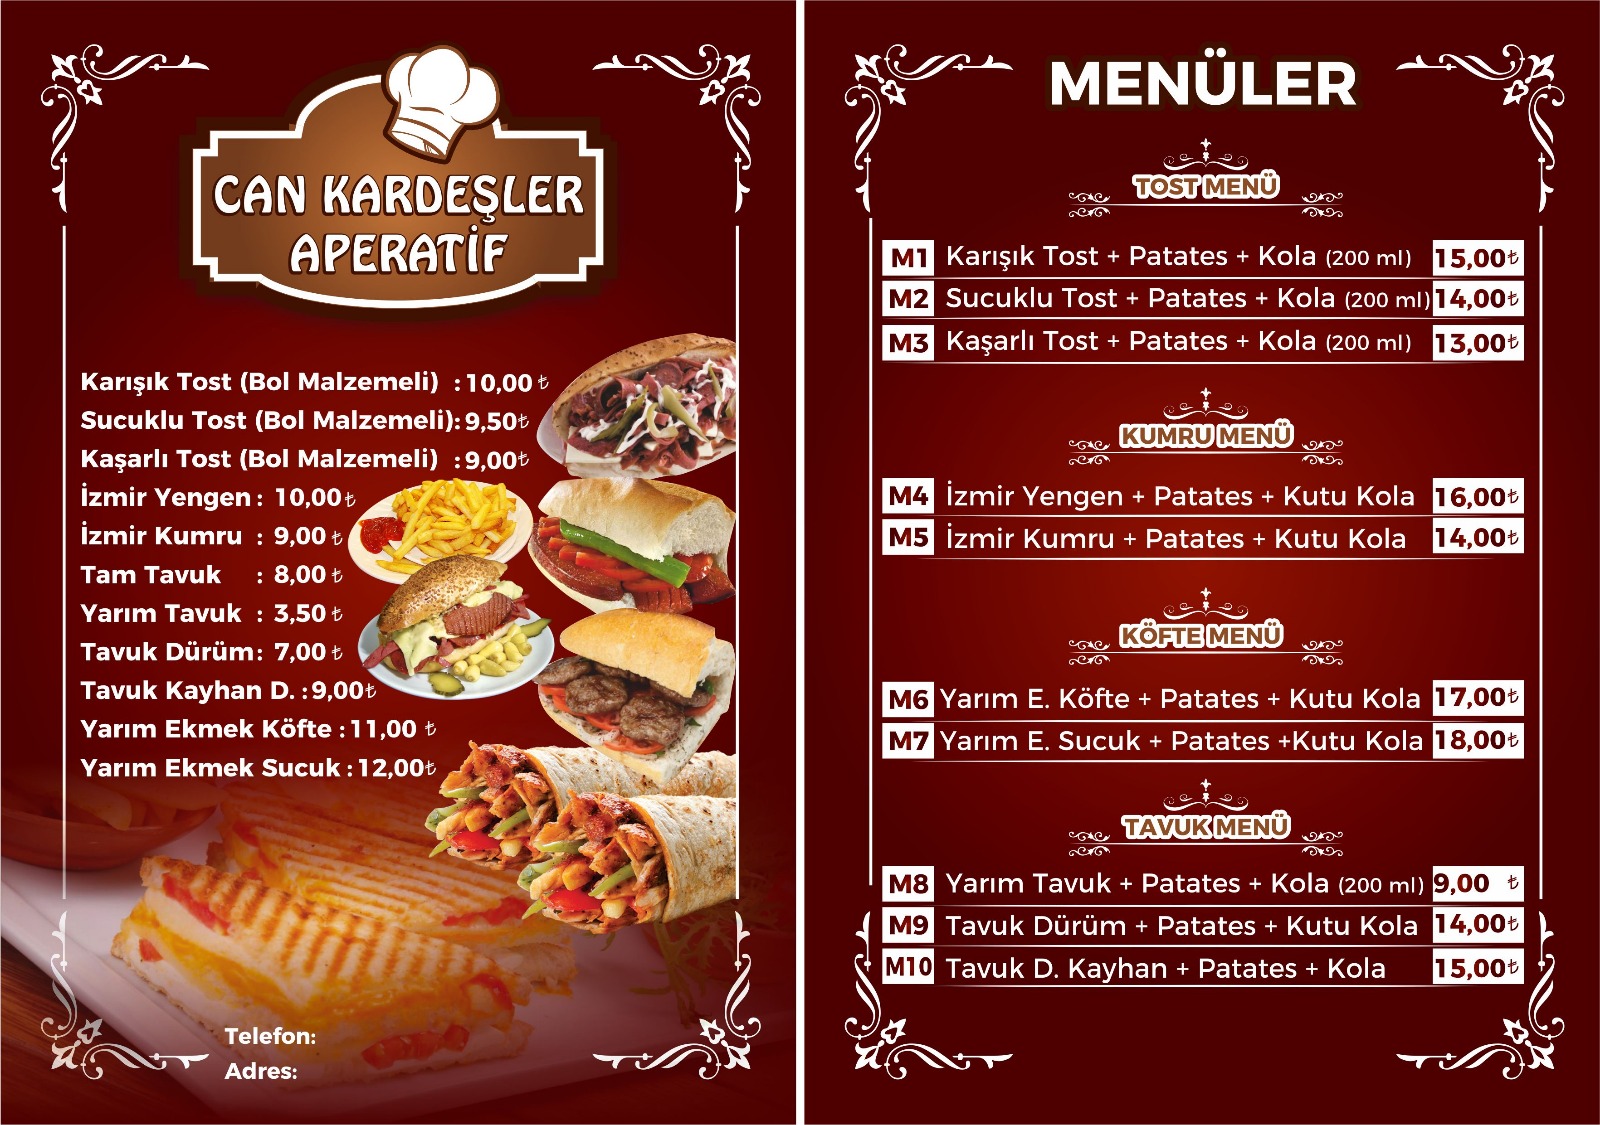 Сосновое меню ресторана. Меню. Меню турецкой кухни для ресторана.